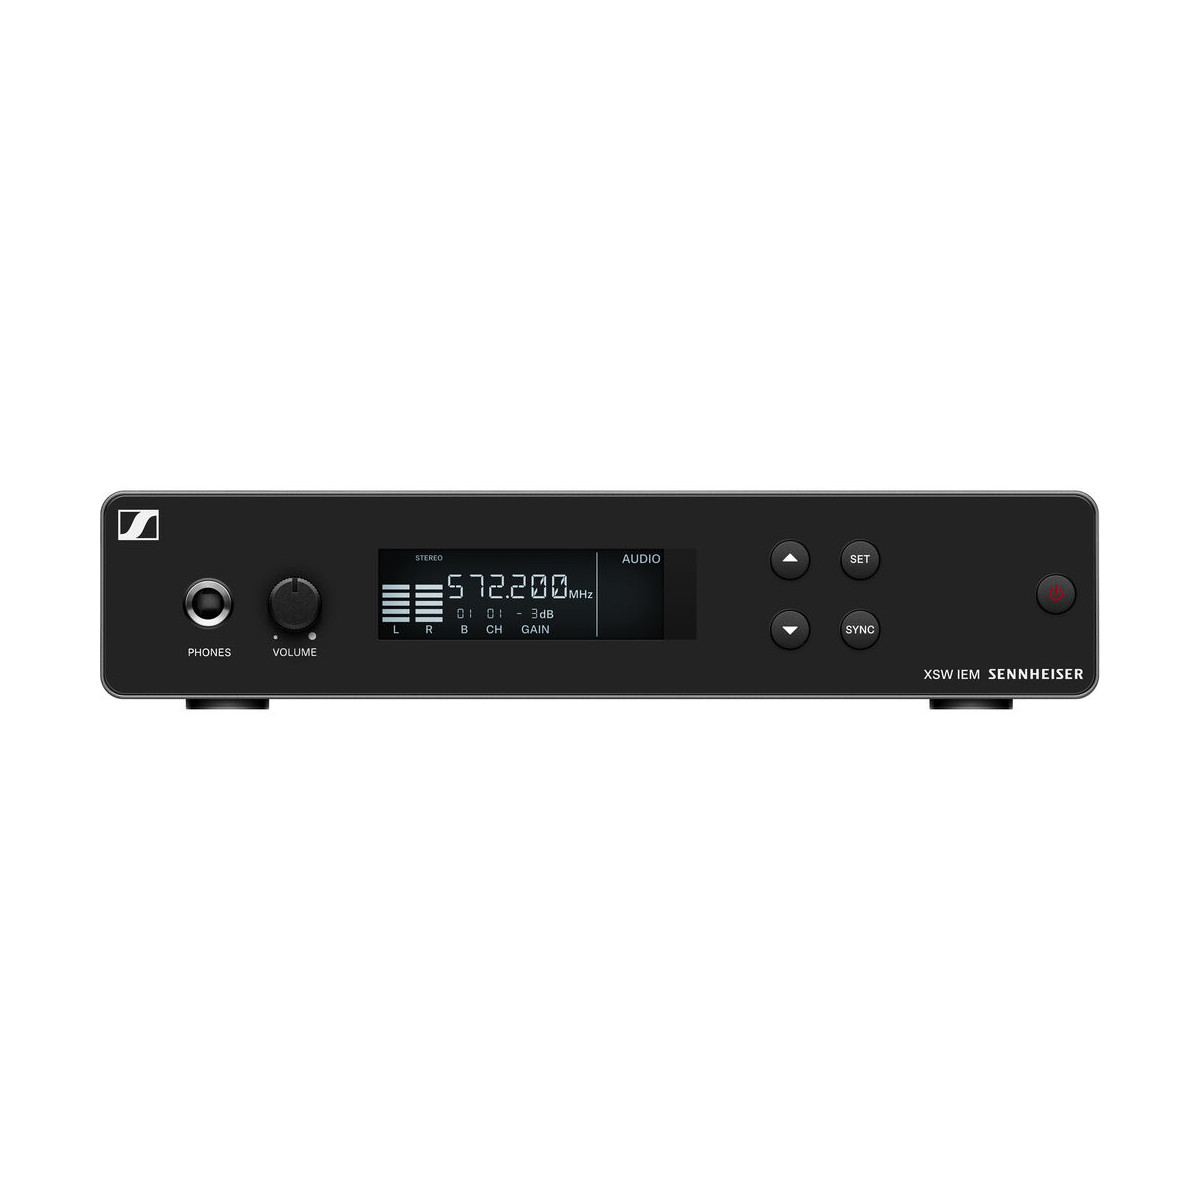 Émetteur récepteur audio vidéo sans fil 2-4GHz 100 mW